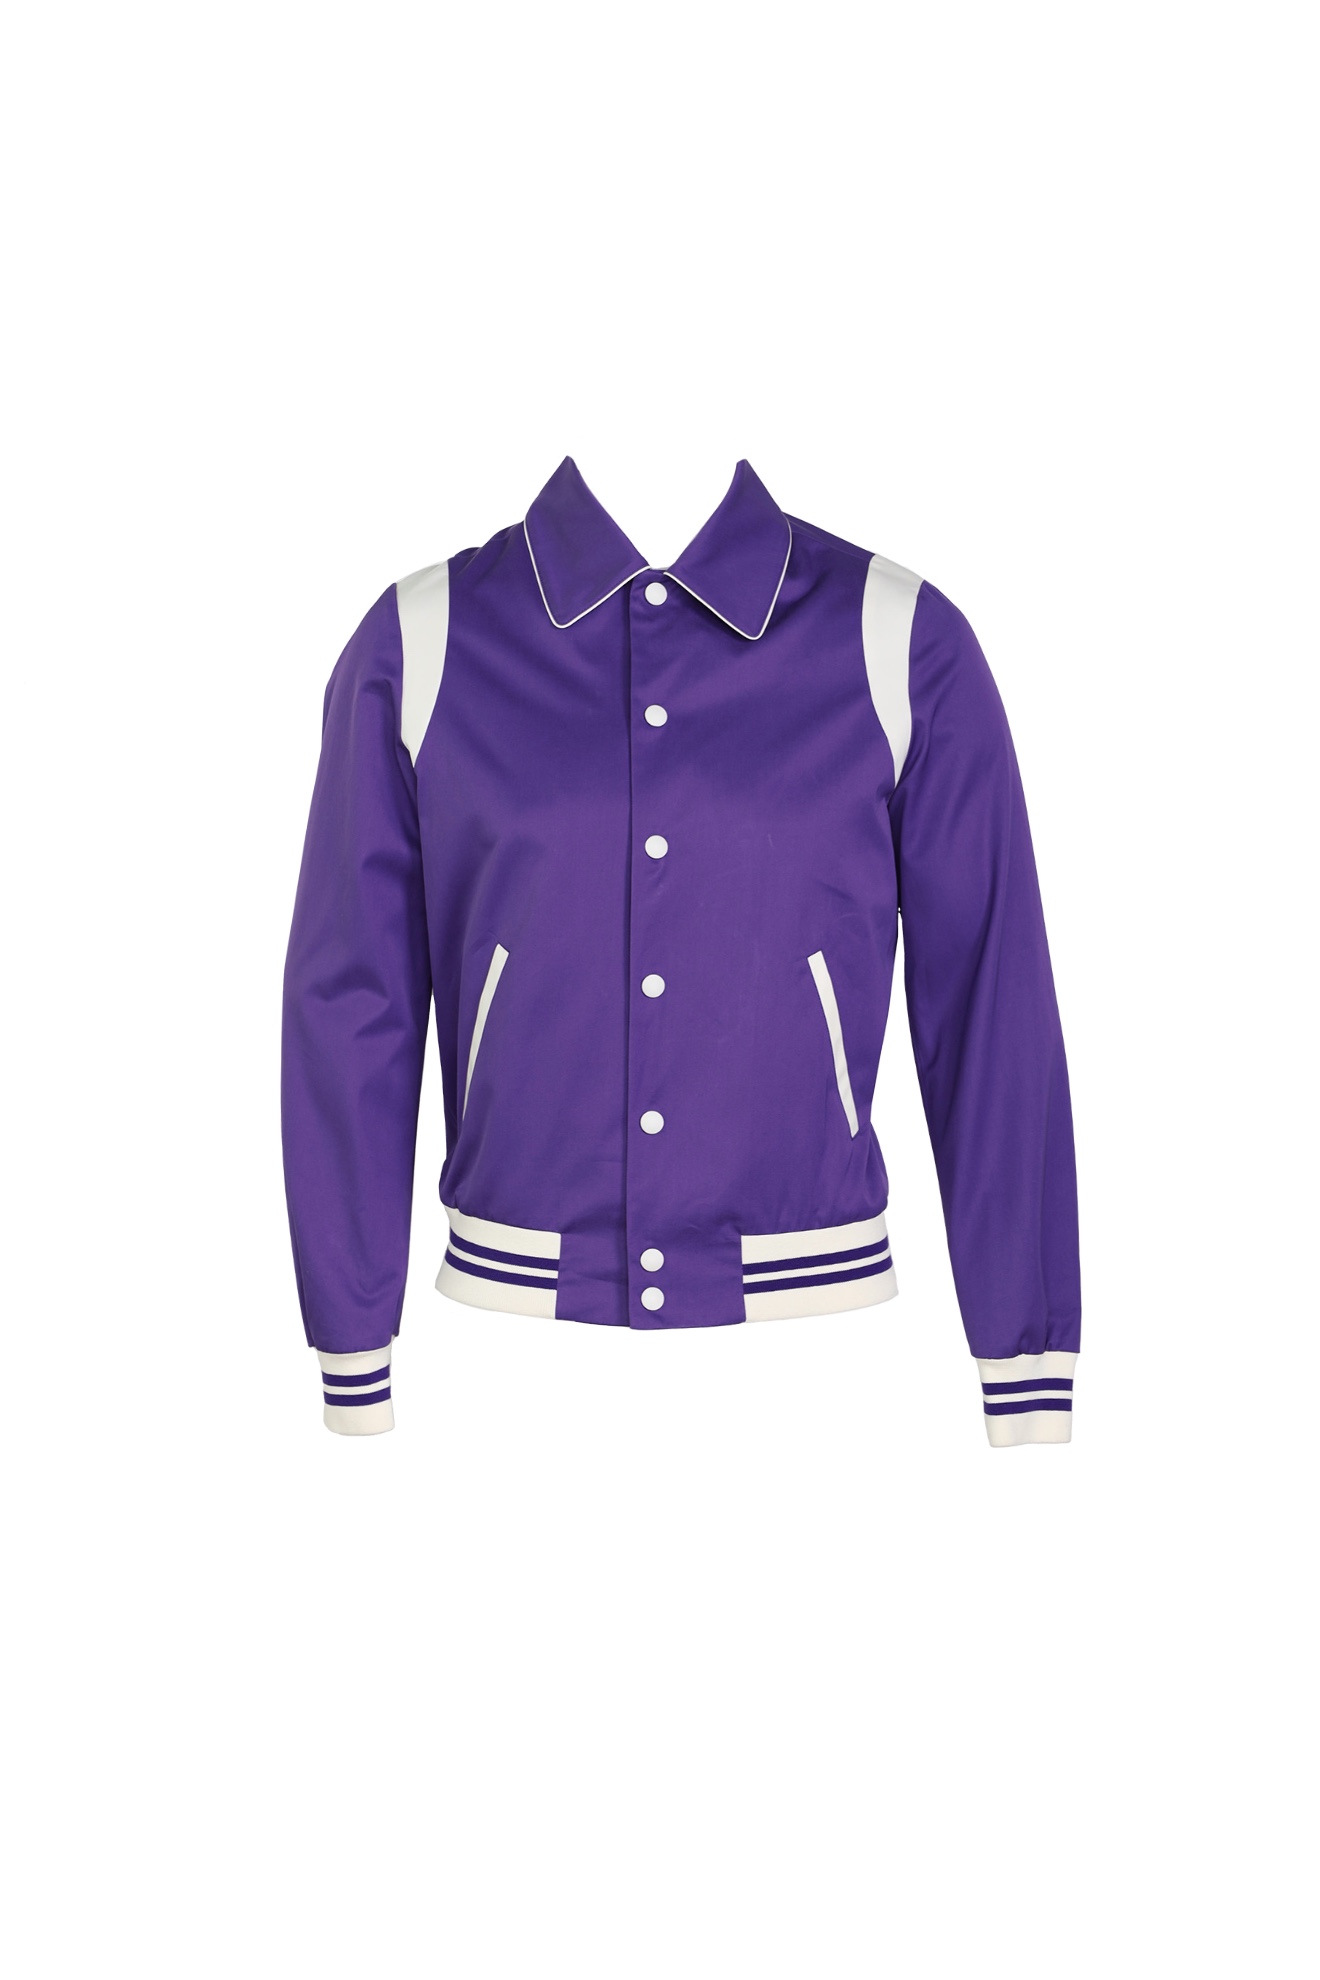 PT Torino Jacke im Collegestil aus Baumwolle lila 50